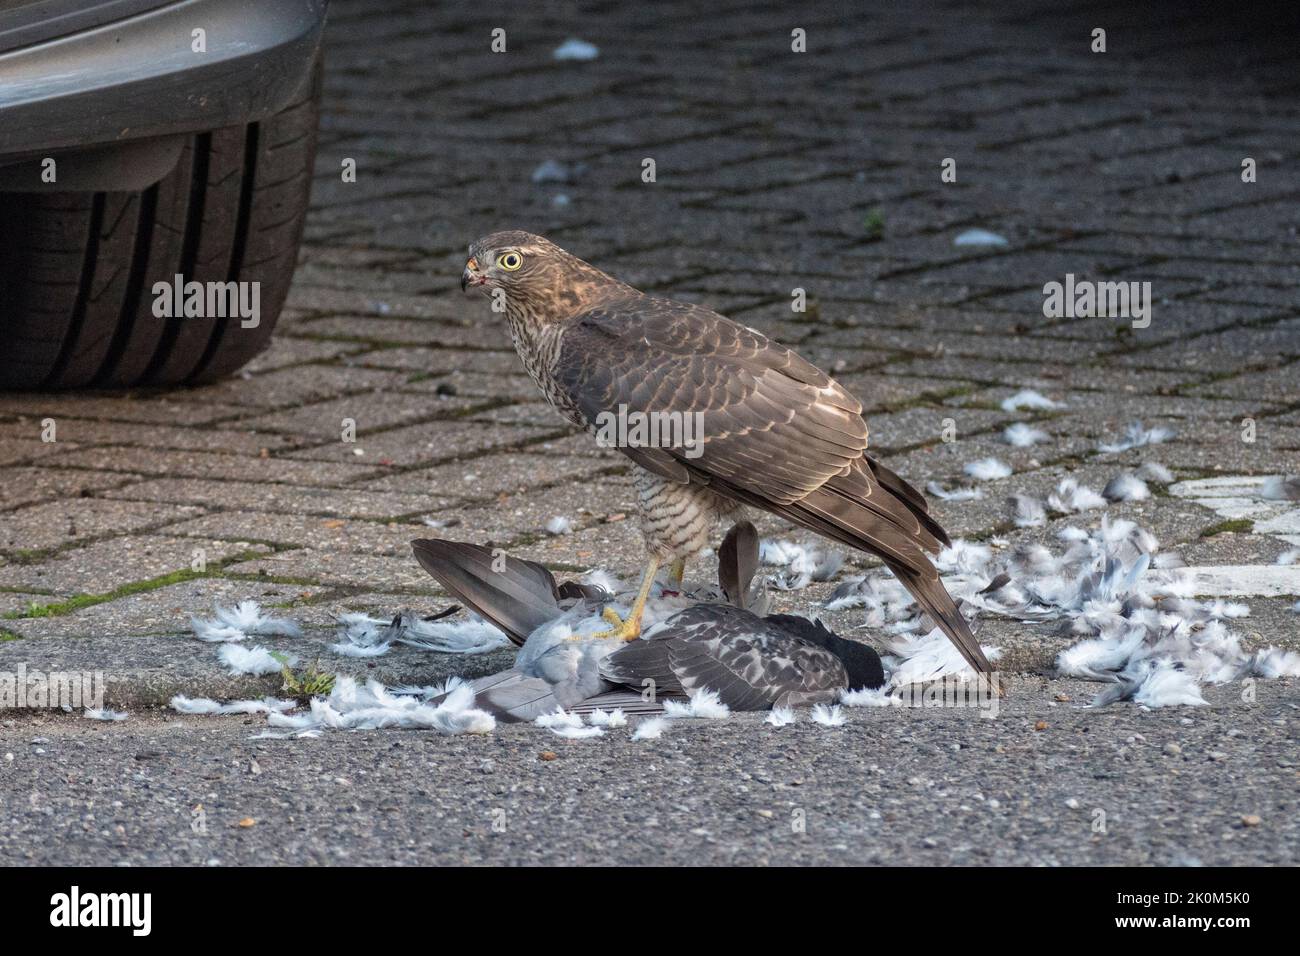 Primo piano di uno sparrowhawk eurasiatico (Accipiter nisus) che si nutra su un piccione morto in un ambiente urbano, Regno Unito. Foto Stock